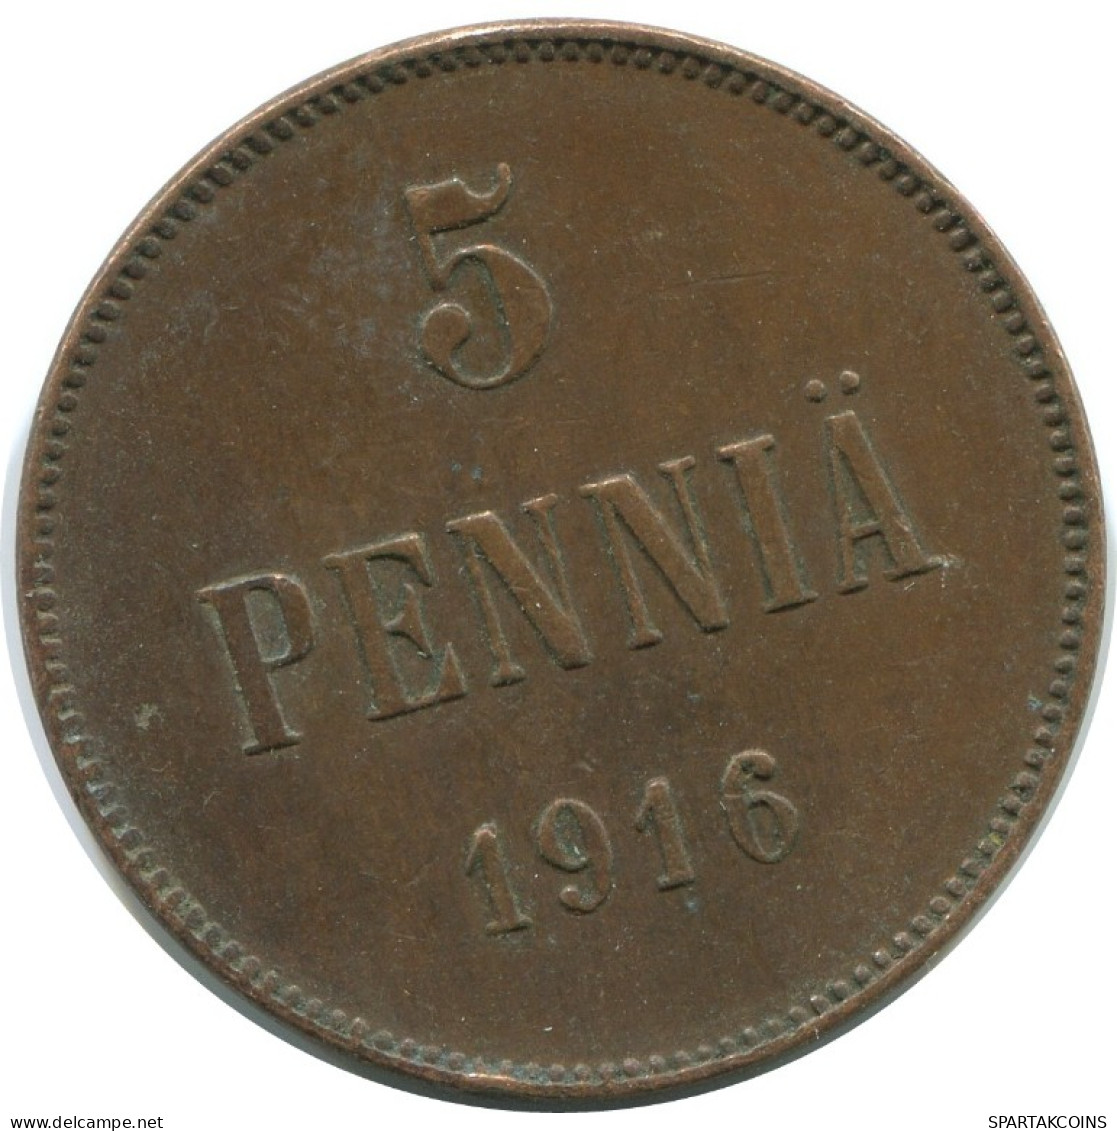 5 PENNIA 1916 FINLANDIA FINLAND Moneda RUSIA RUSSIA EMPIRE #AB271.5.E.A - Finlandia